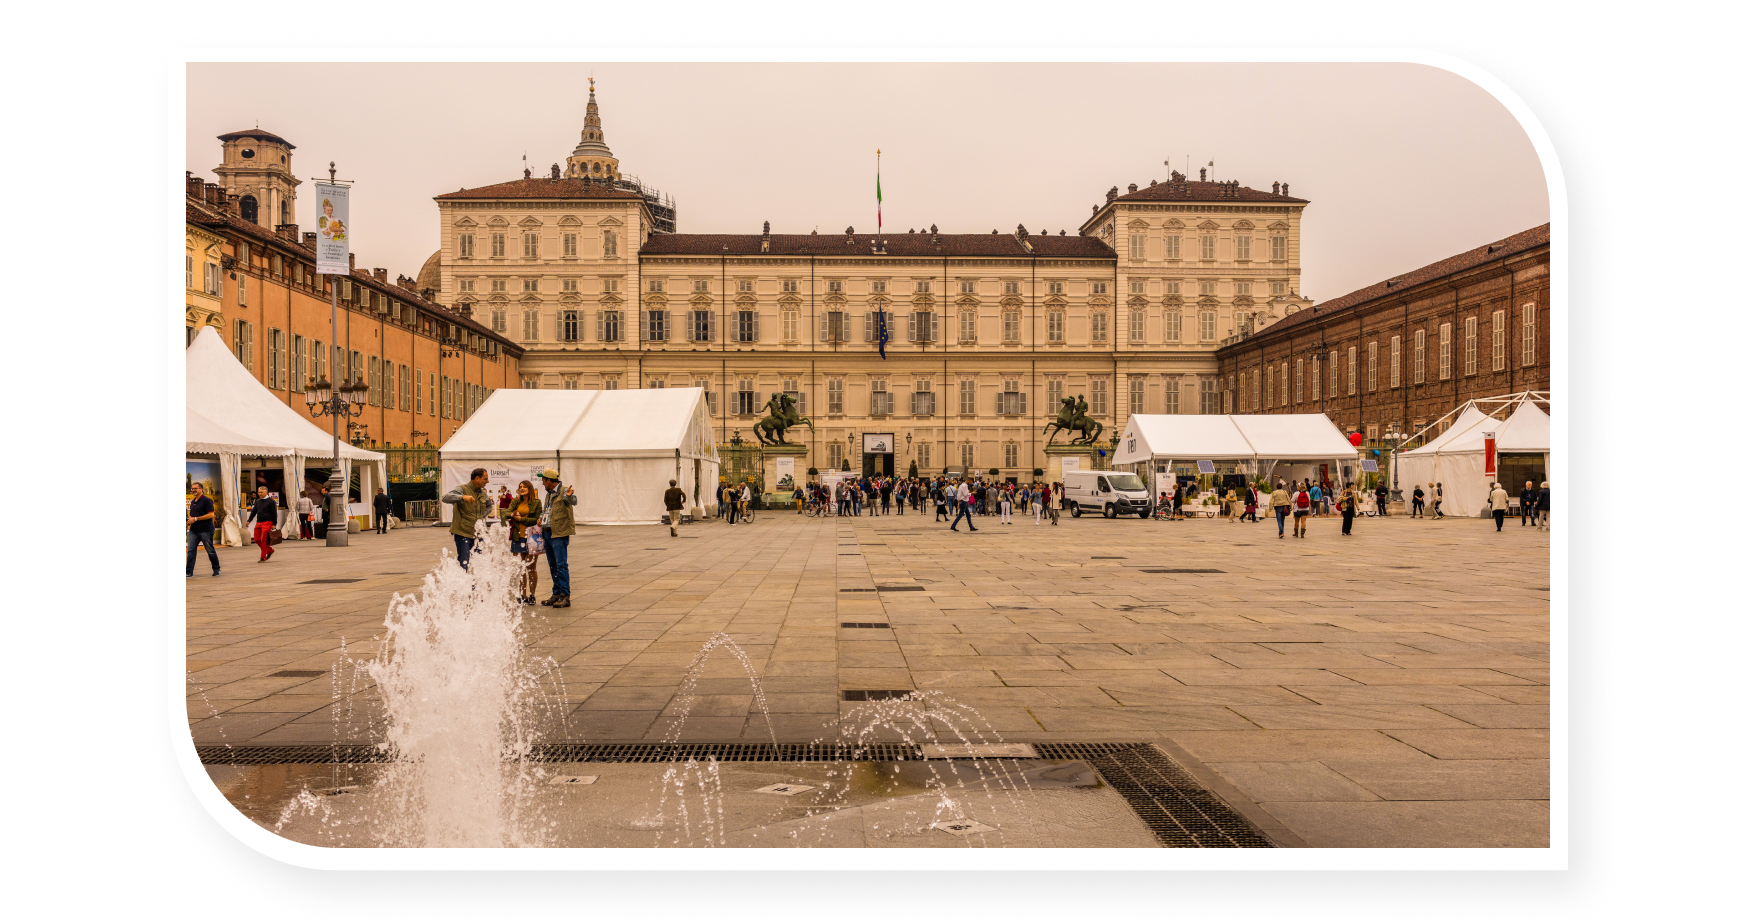 Piazza del Castello, Turin, Italy